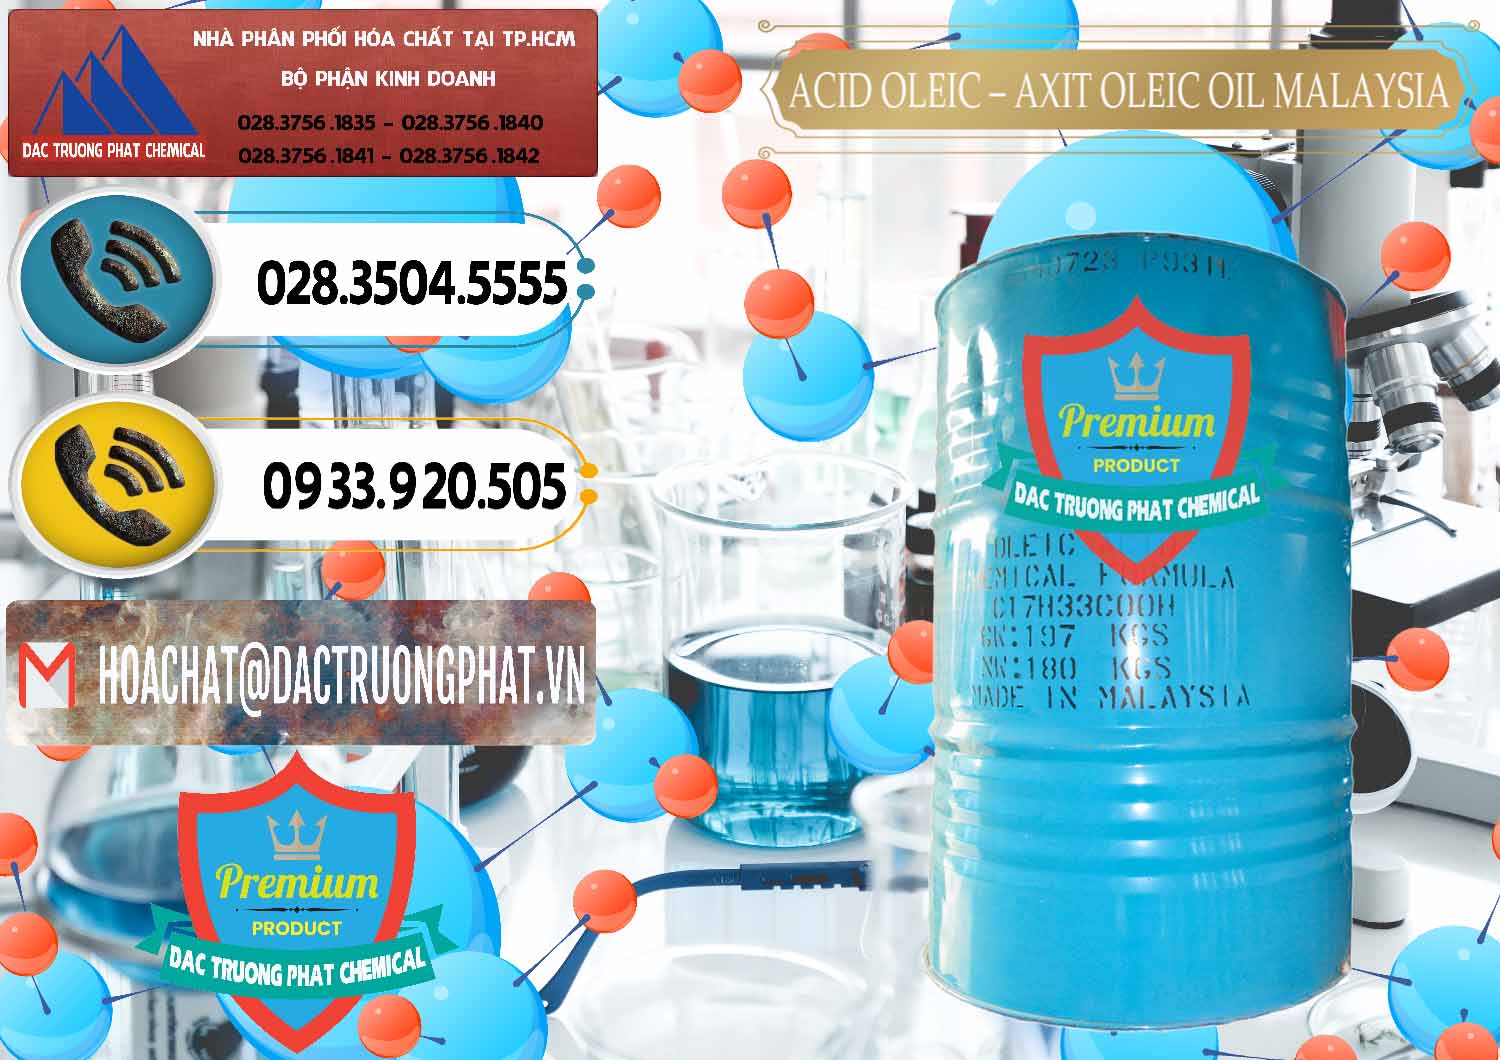 Nơi chuyên cung cấp & bán Acid Oleic – Axit Oleic Oil Malaysia - 0013 - Đơn vị nhập khẩu và phân phối hóa chất tại TP.HCM - hoachatdetnhuom.vn